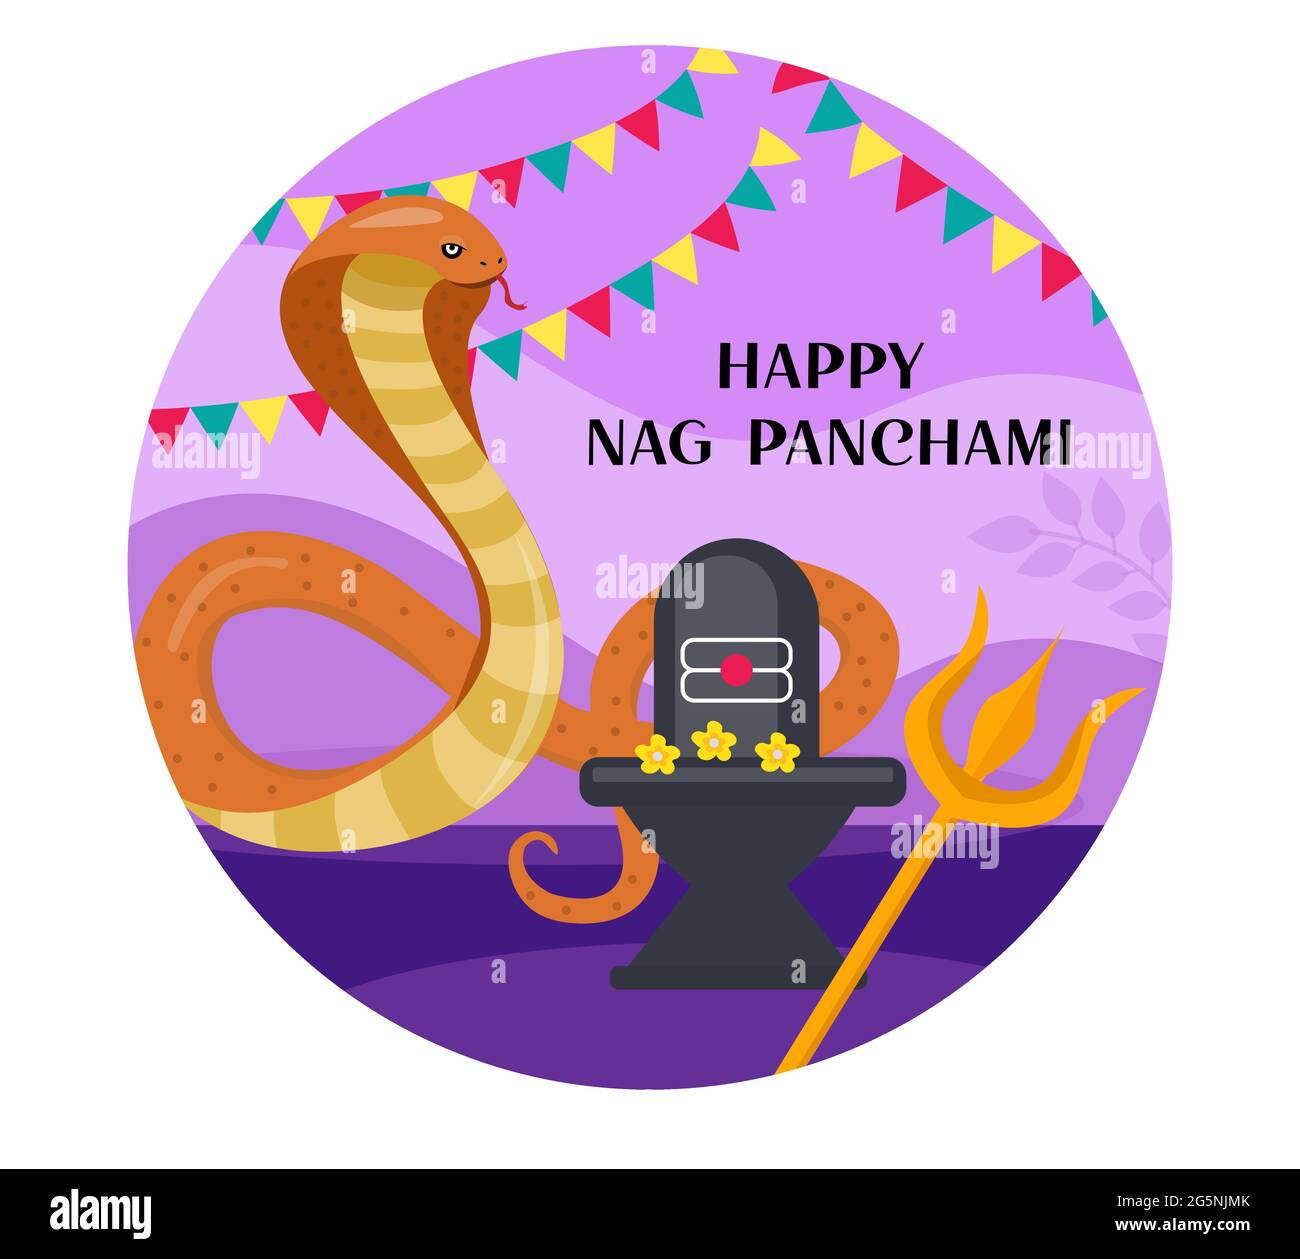 Glückliche Nag Panchami Grußkarte mit Kobra König. Snake Festival in Indien. Vektorgrafik. Stock Vektor